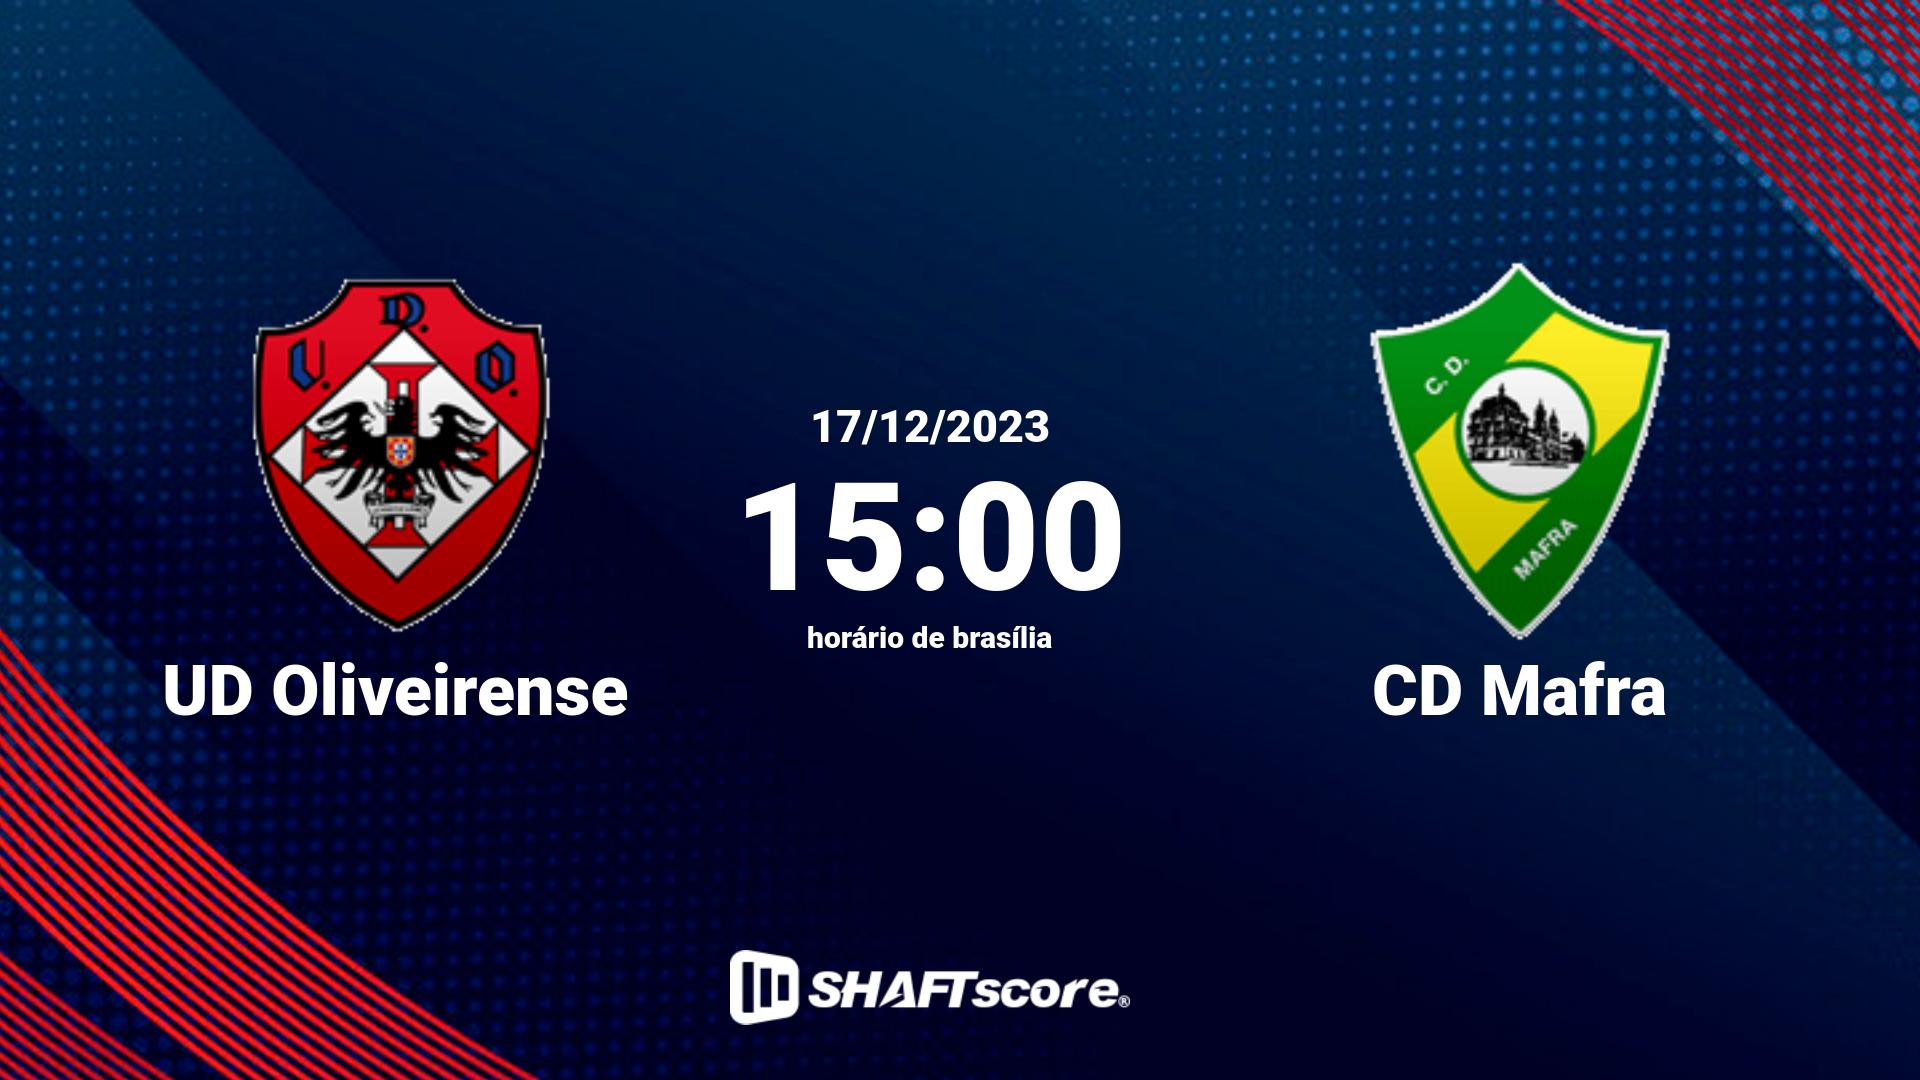 Estatísticas do jogo UD Oliveirense vs CD Mafra 17.12 15:00